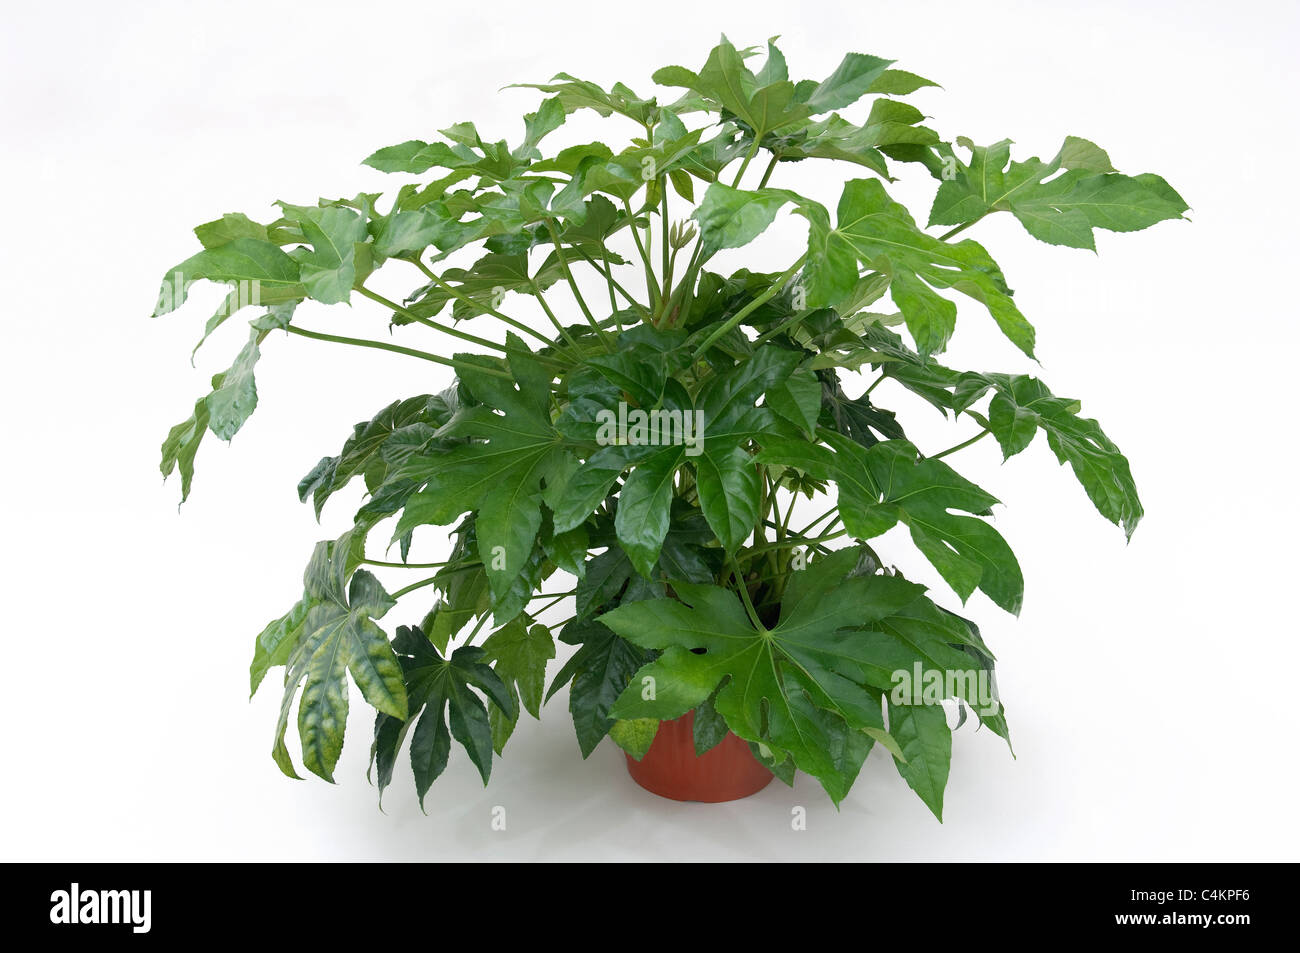 Fatsi, japanische Aralia (Fatsia Japonica), Topfpflanze. Studio Bild vor einem weißen Hintergrund Stockfoto